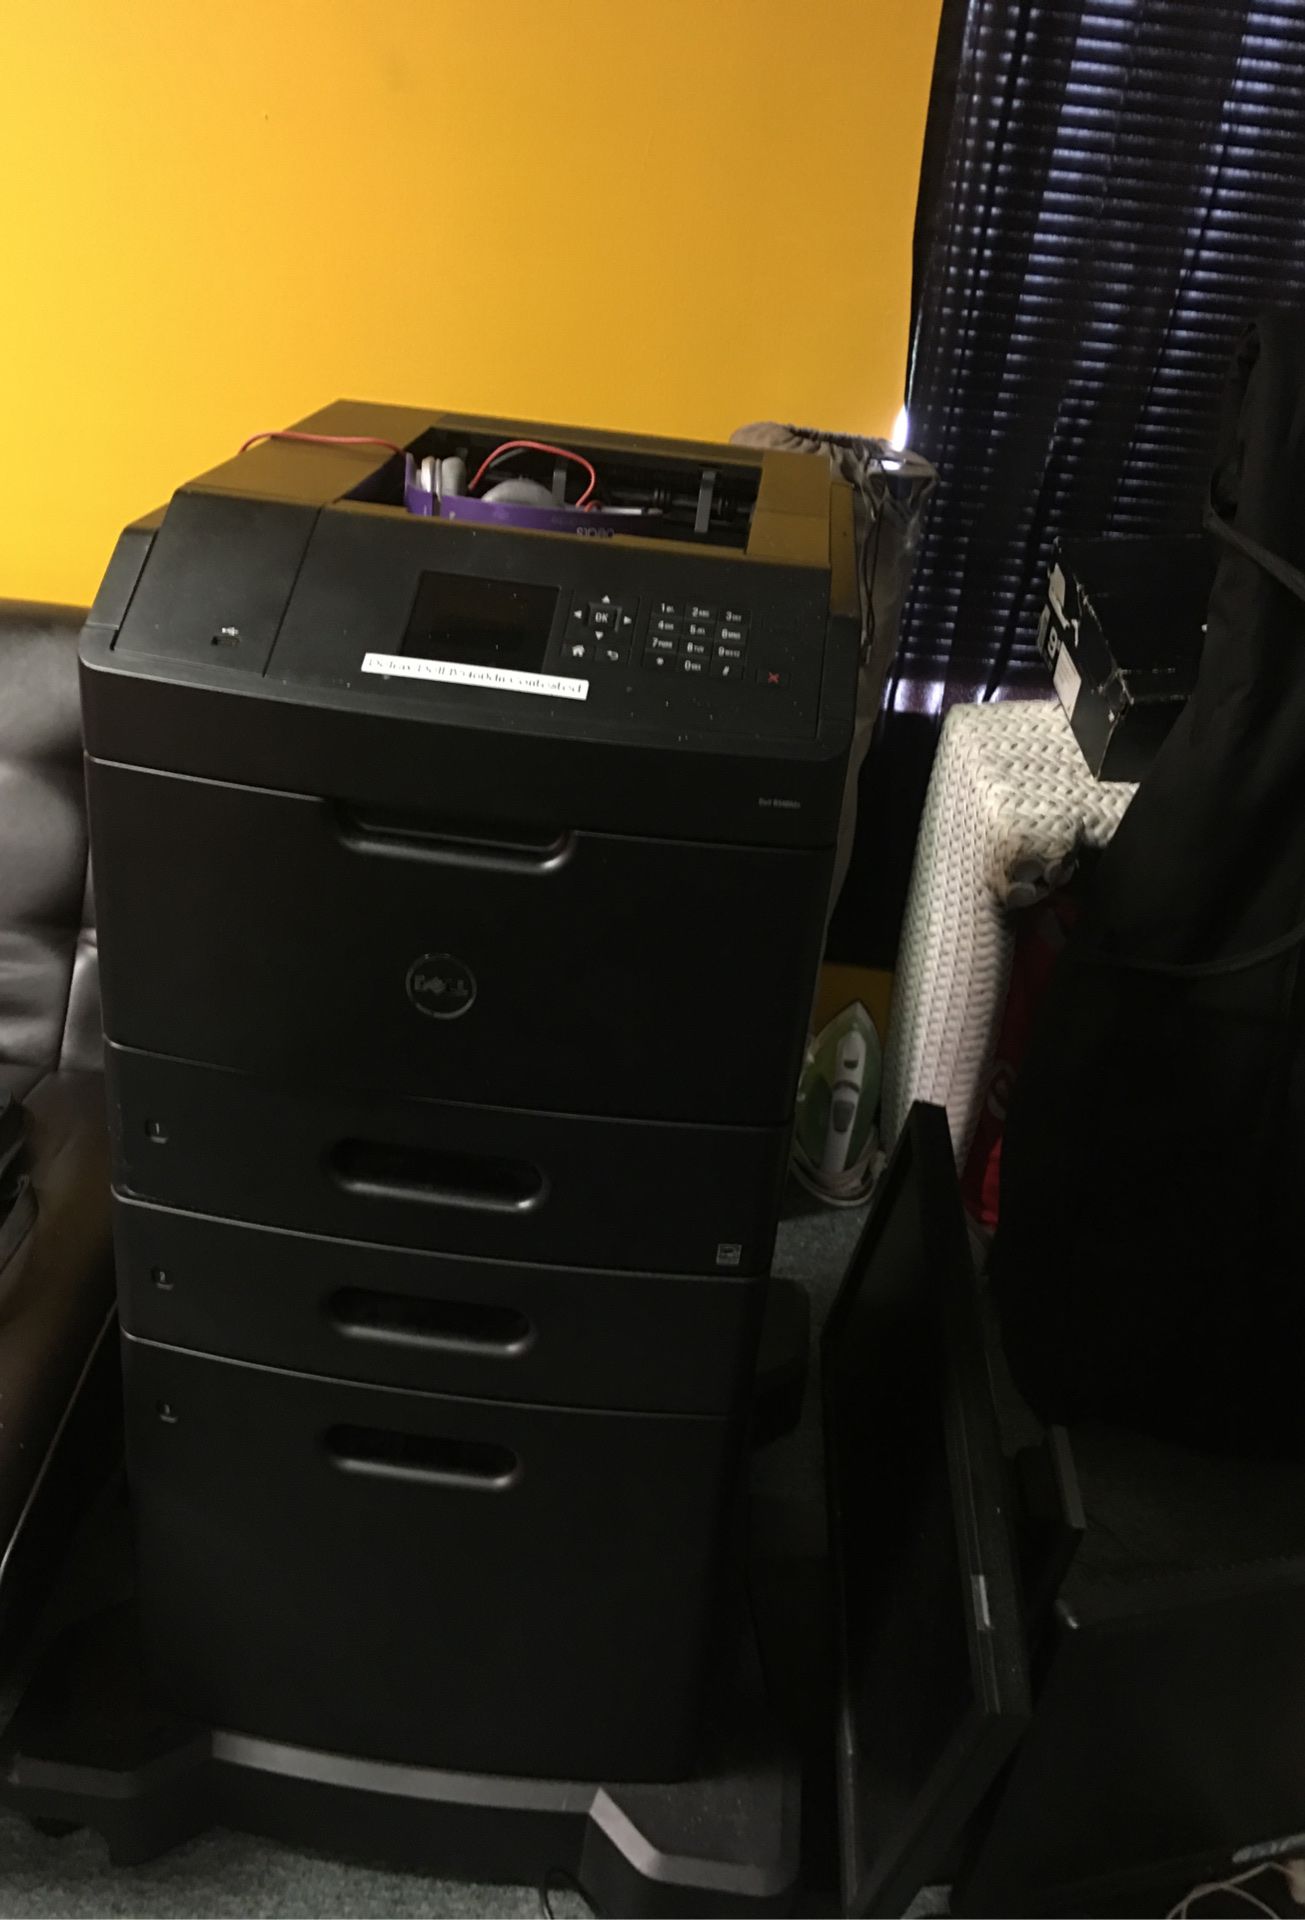 Dell B5460dn mono laser printer